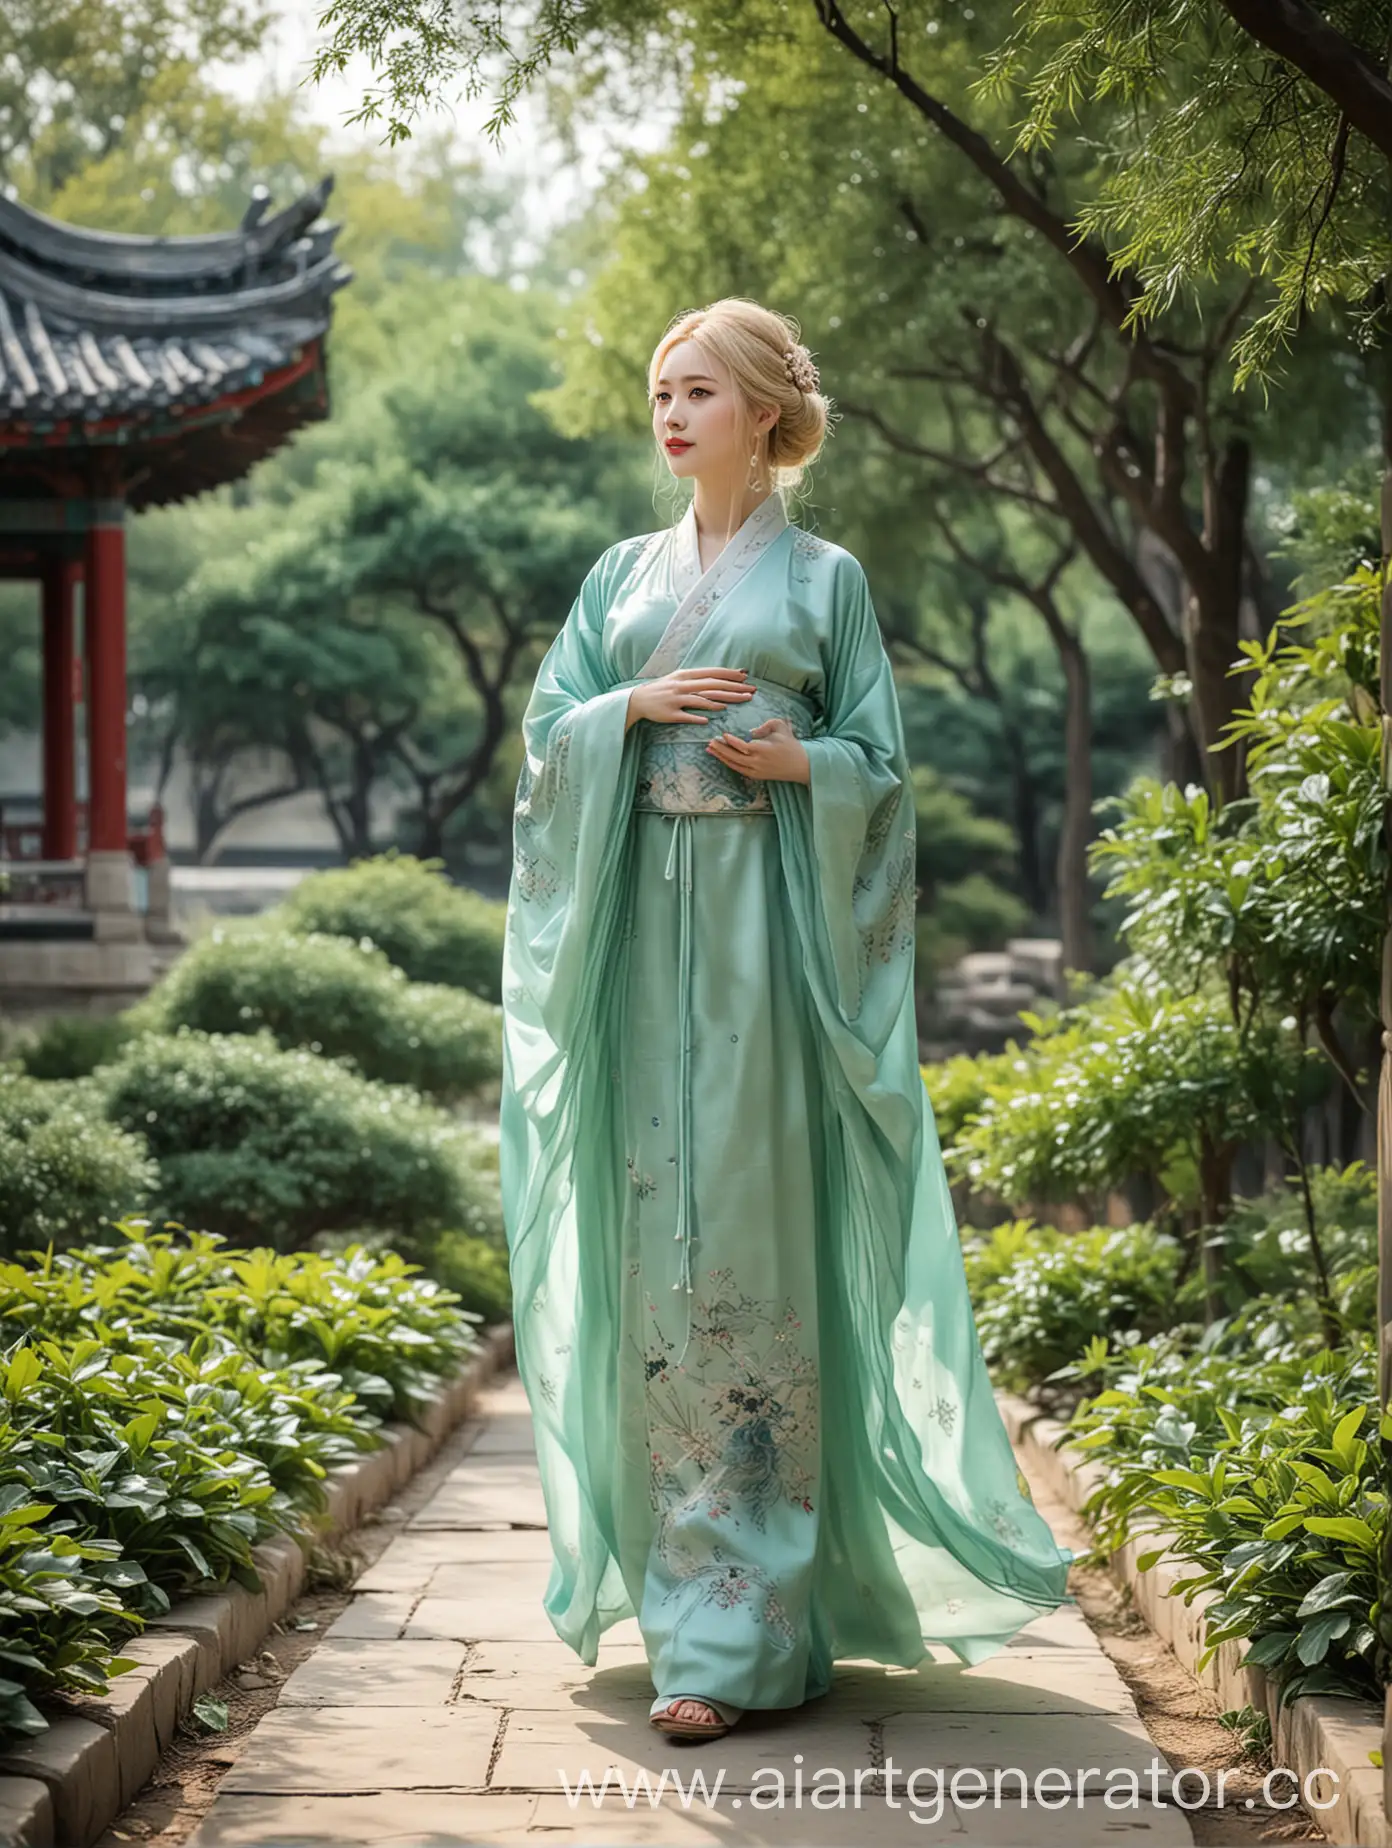 Pregnant-Blonde-Princess-in-Green-Hanfu-Strolls-Through-Ancient-Chinese-Garden